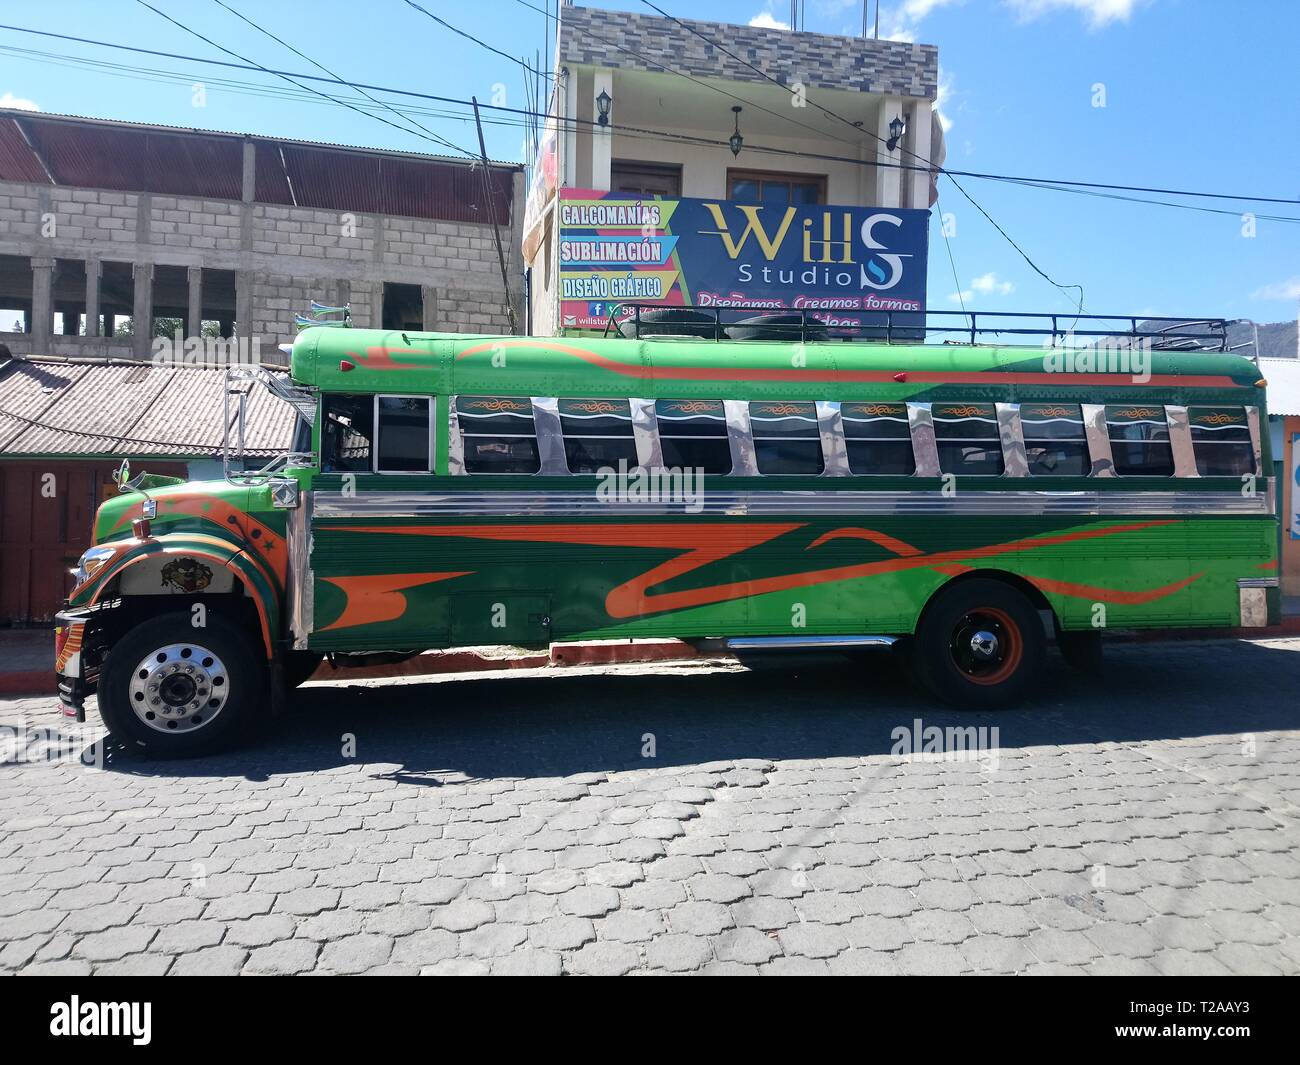 Camionetas de Transporte urbano rurali cajola guatemala quetzaltenango ciudad del quetzal, rutas un xela san juan os, las esperanza un cajola, bus verde Foto Stock